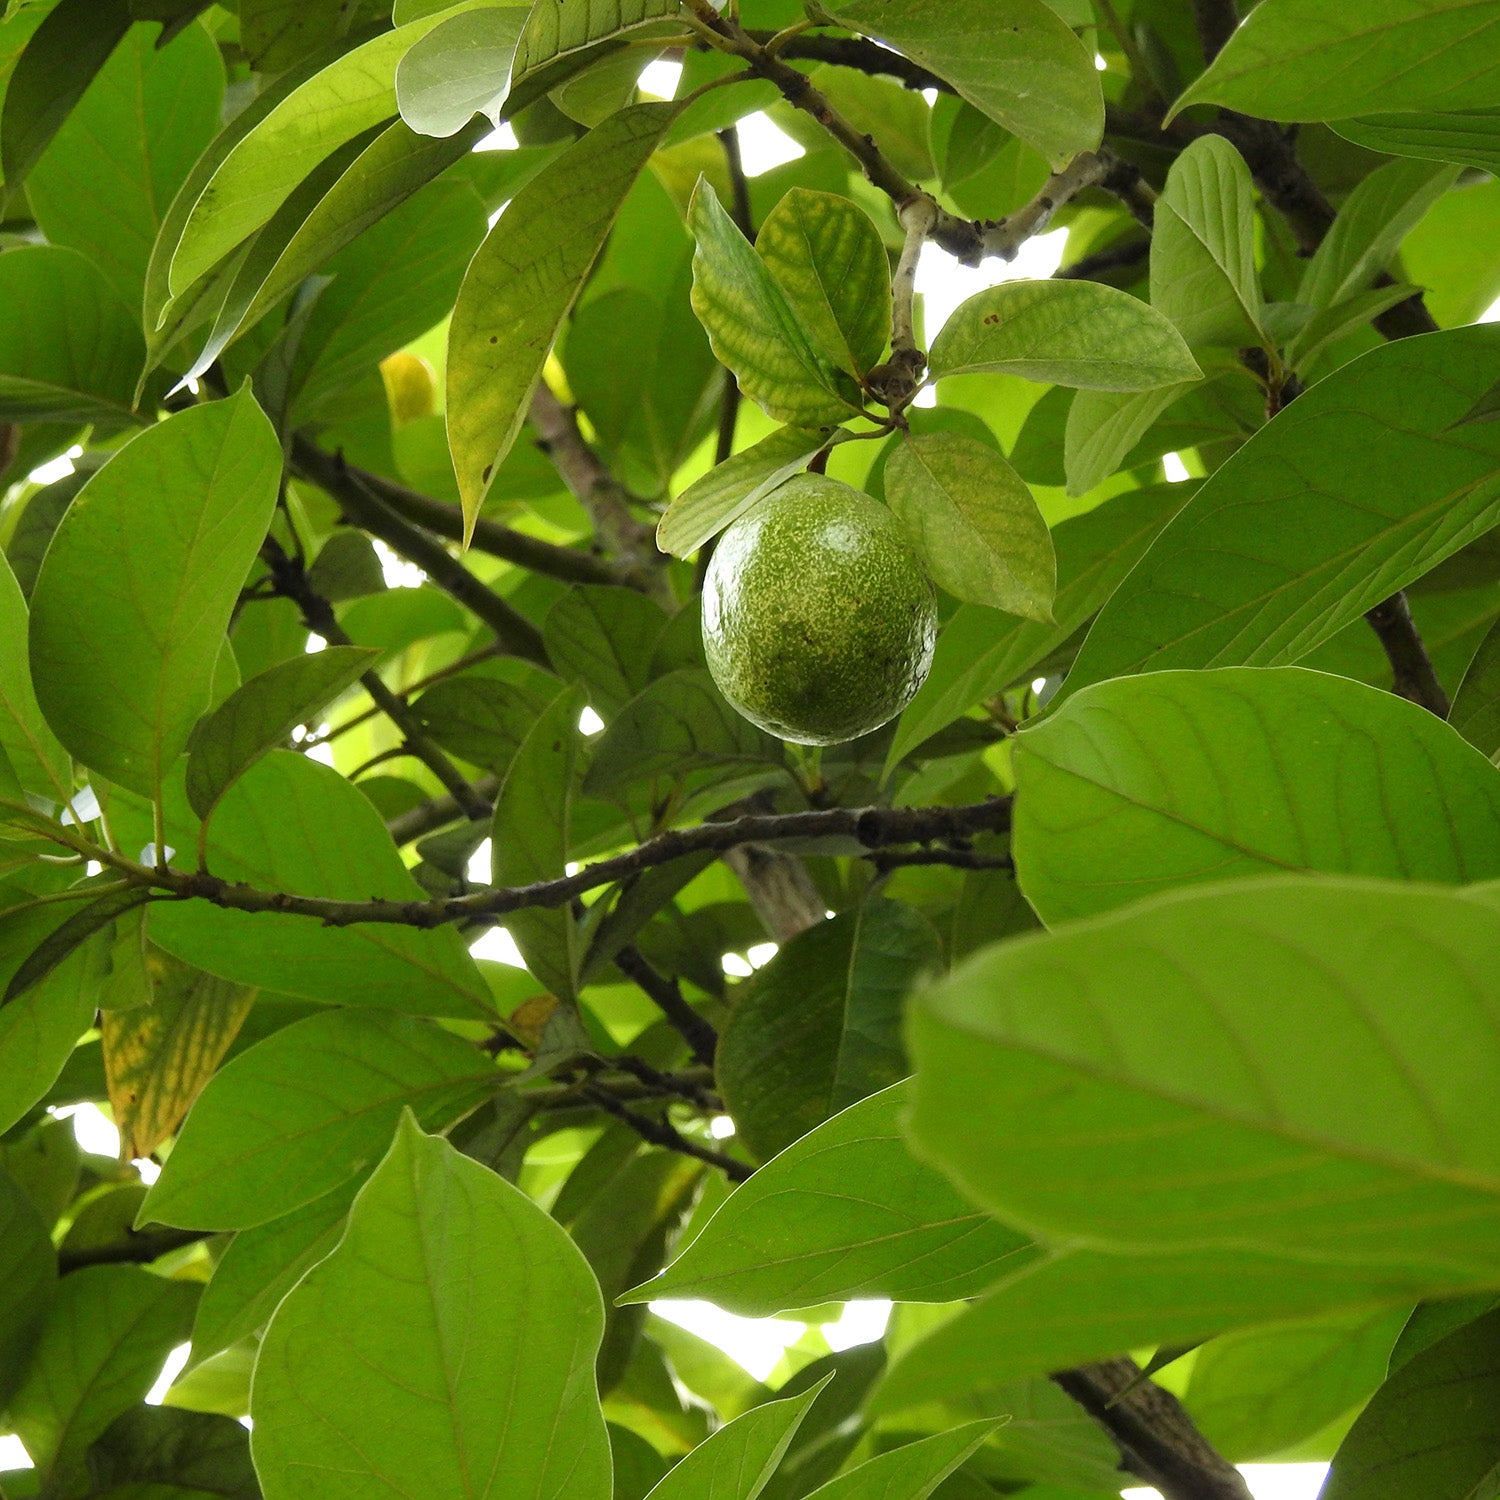 Black walnut trees